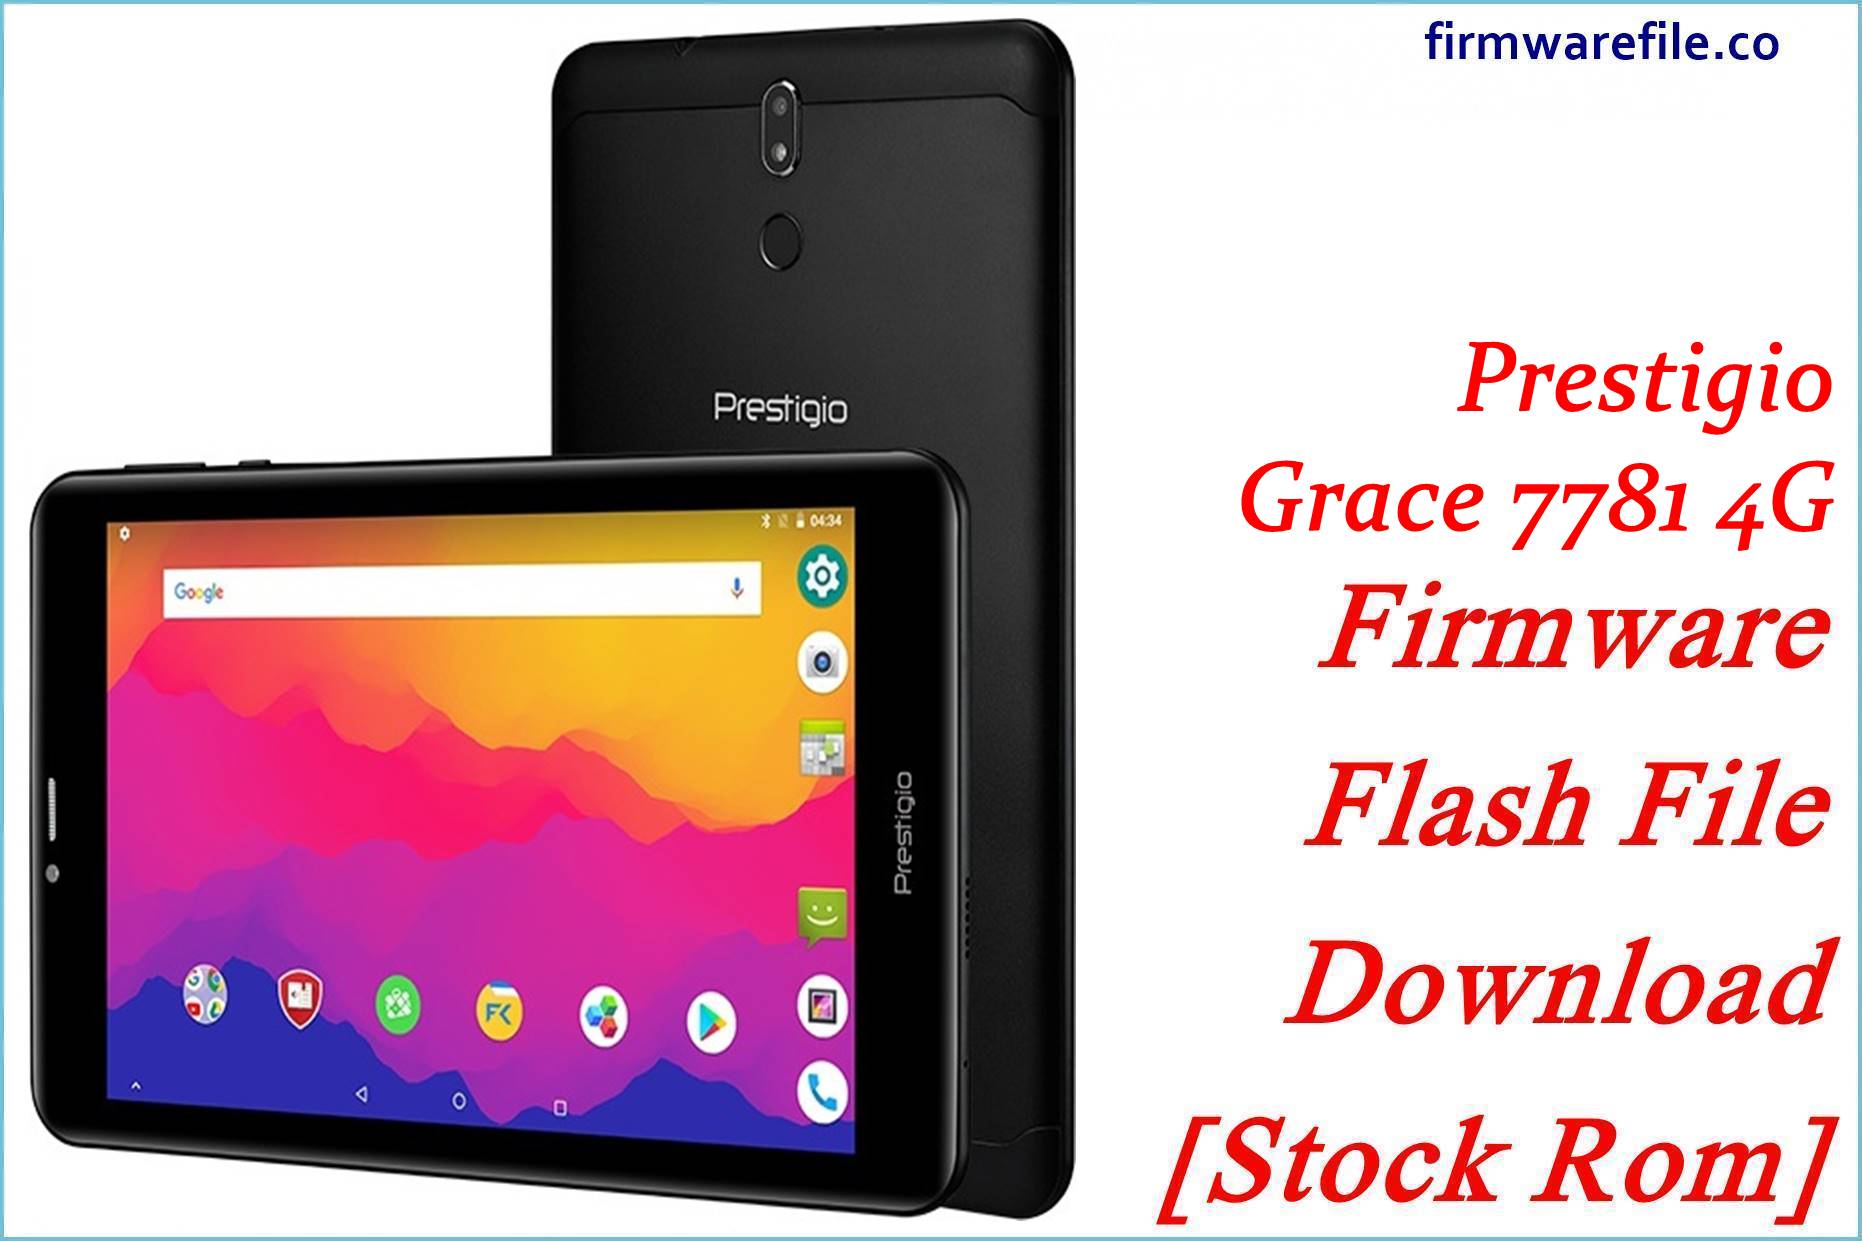 Prestigio Grace 7781 4G Firmware Flash File Download [Stock Rom]